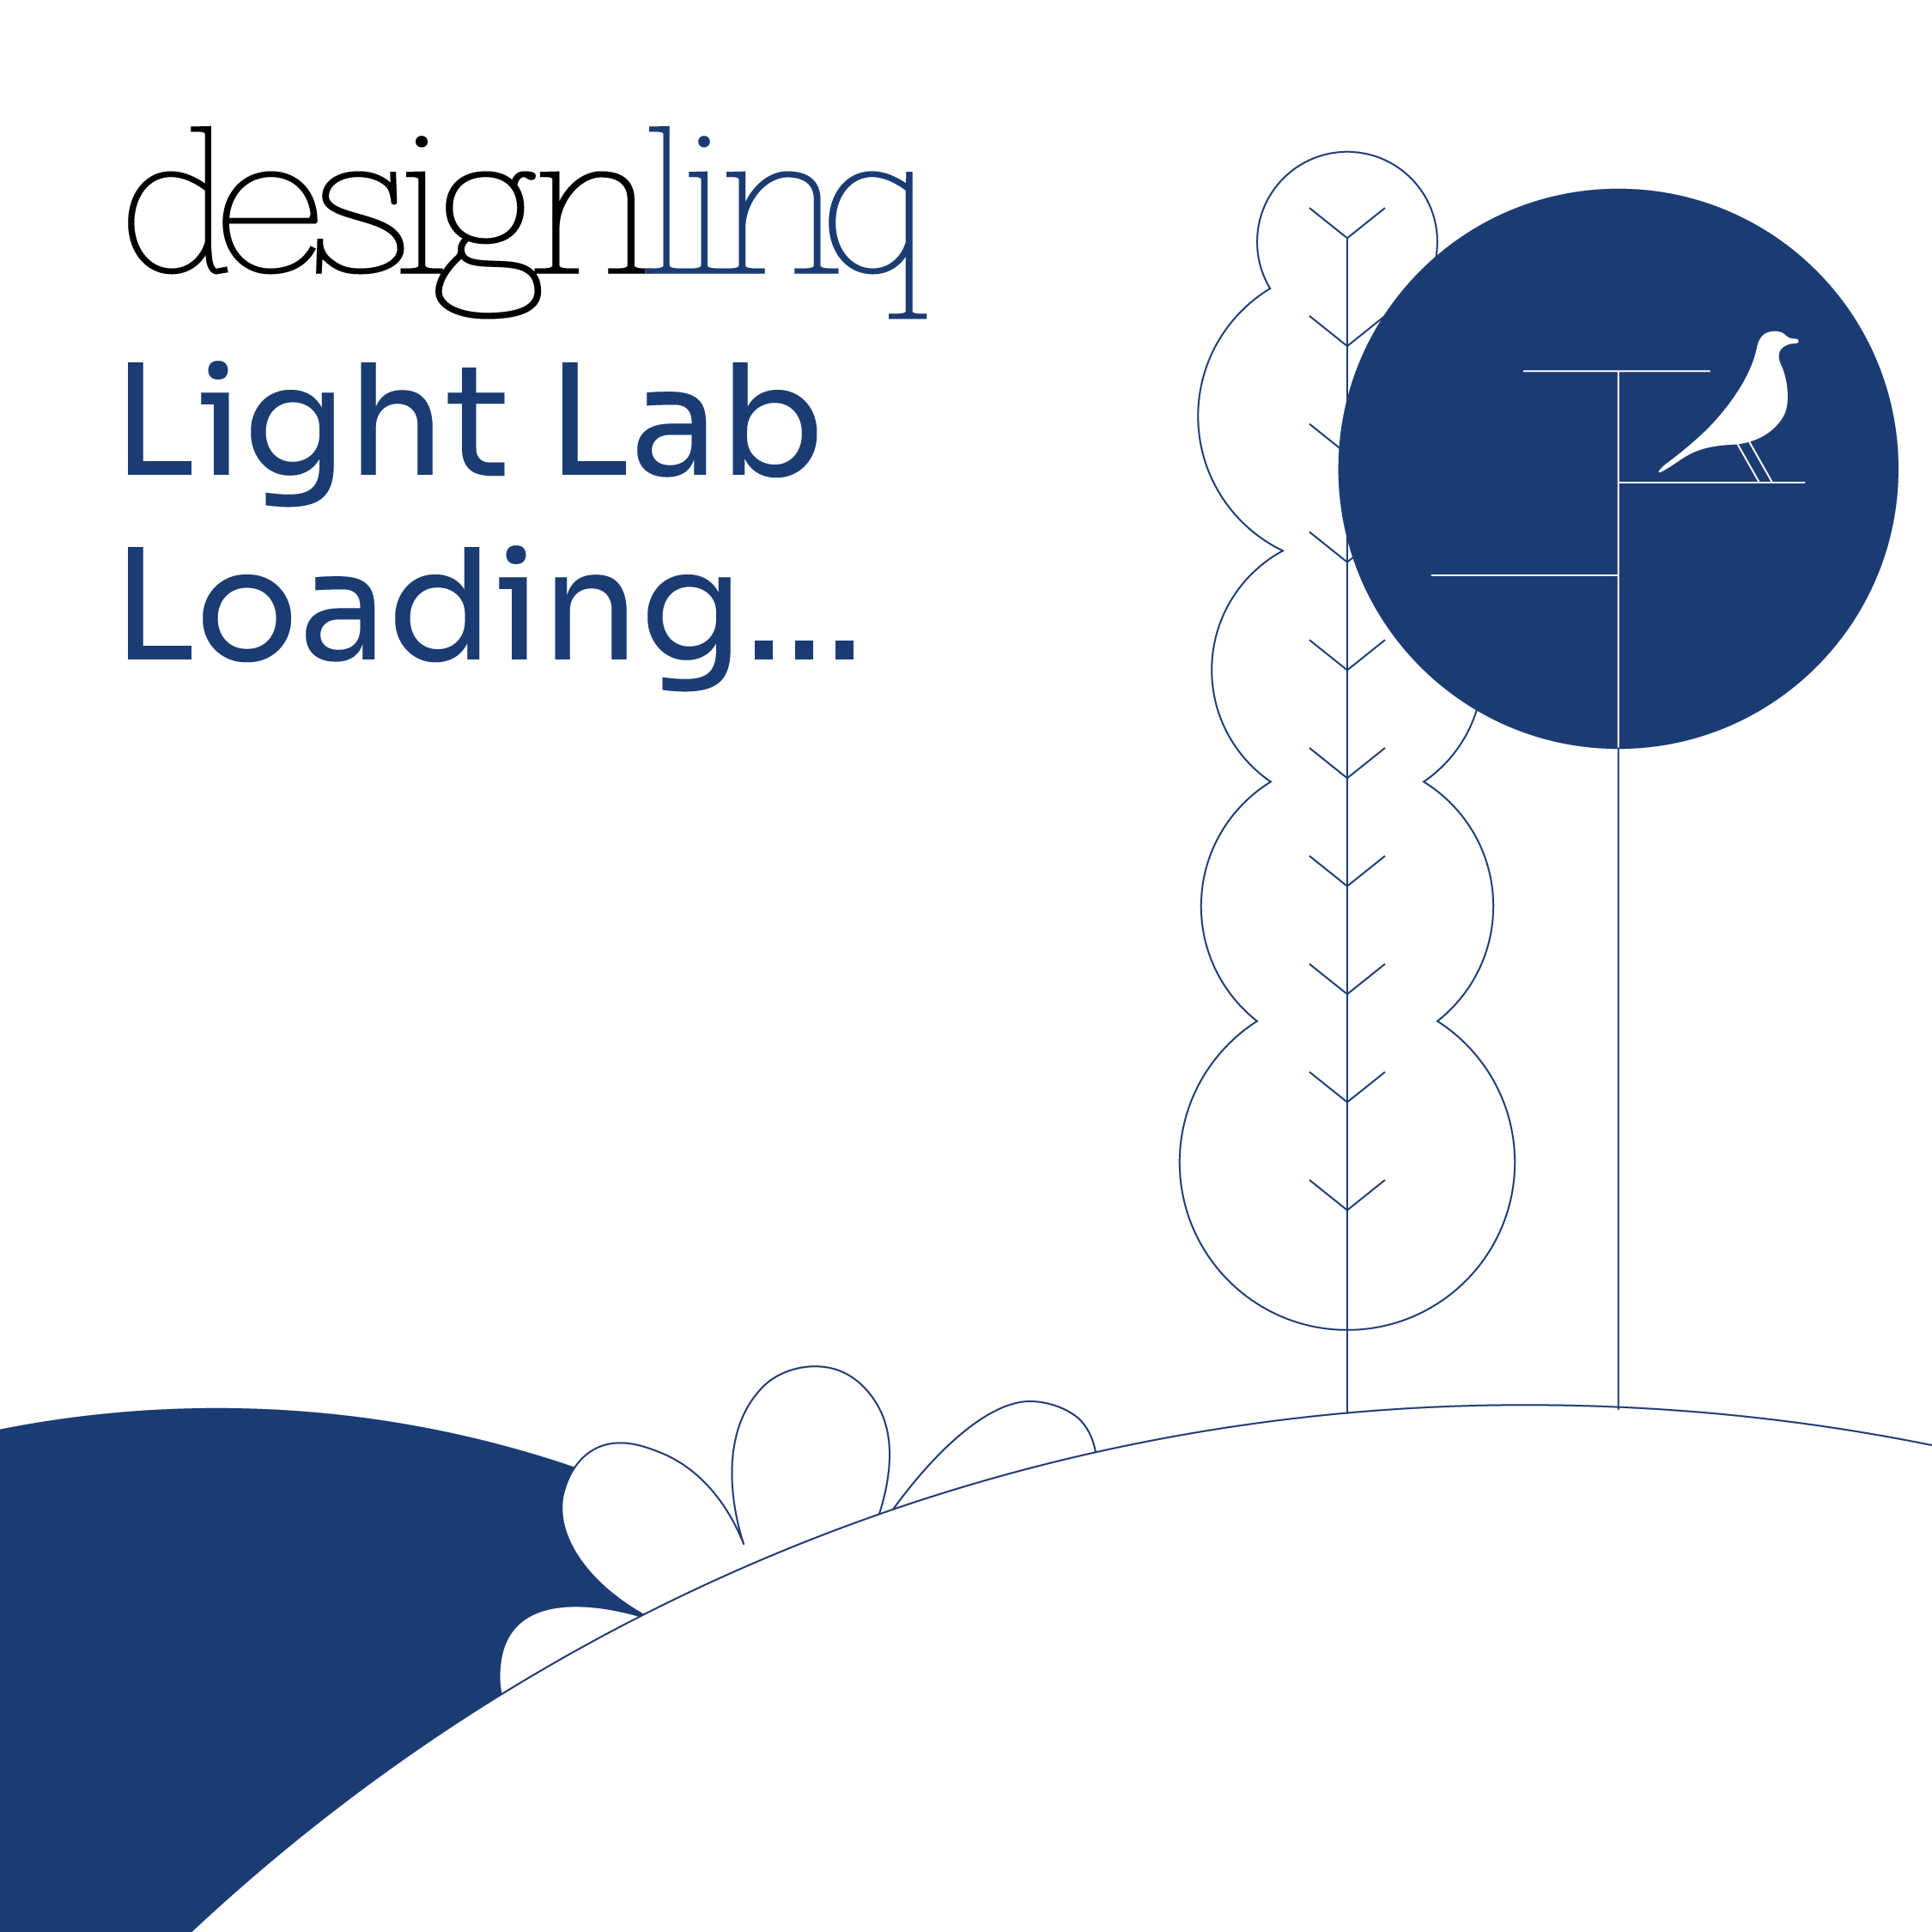 Designlinq Light Lab